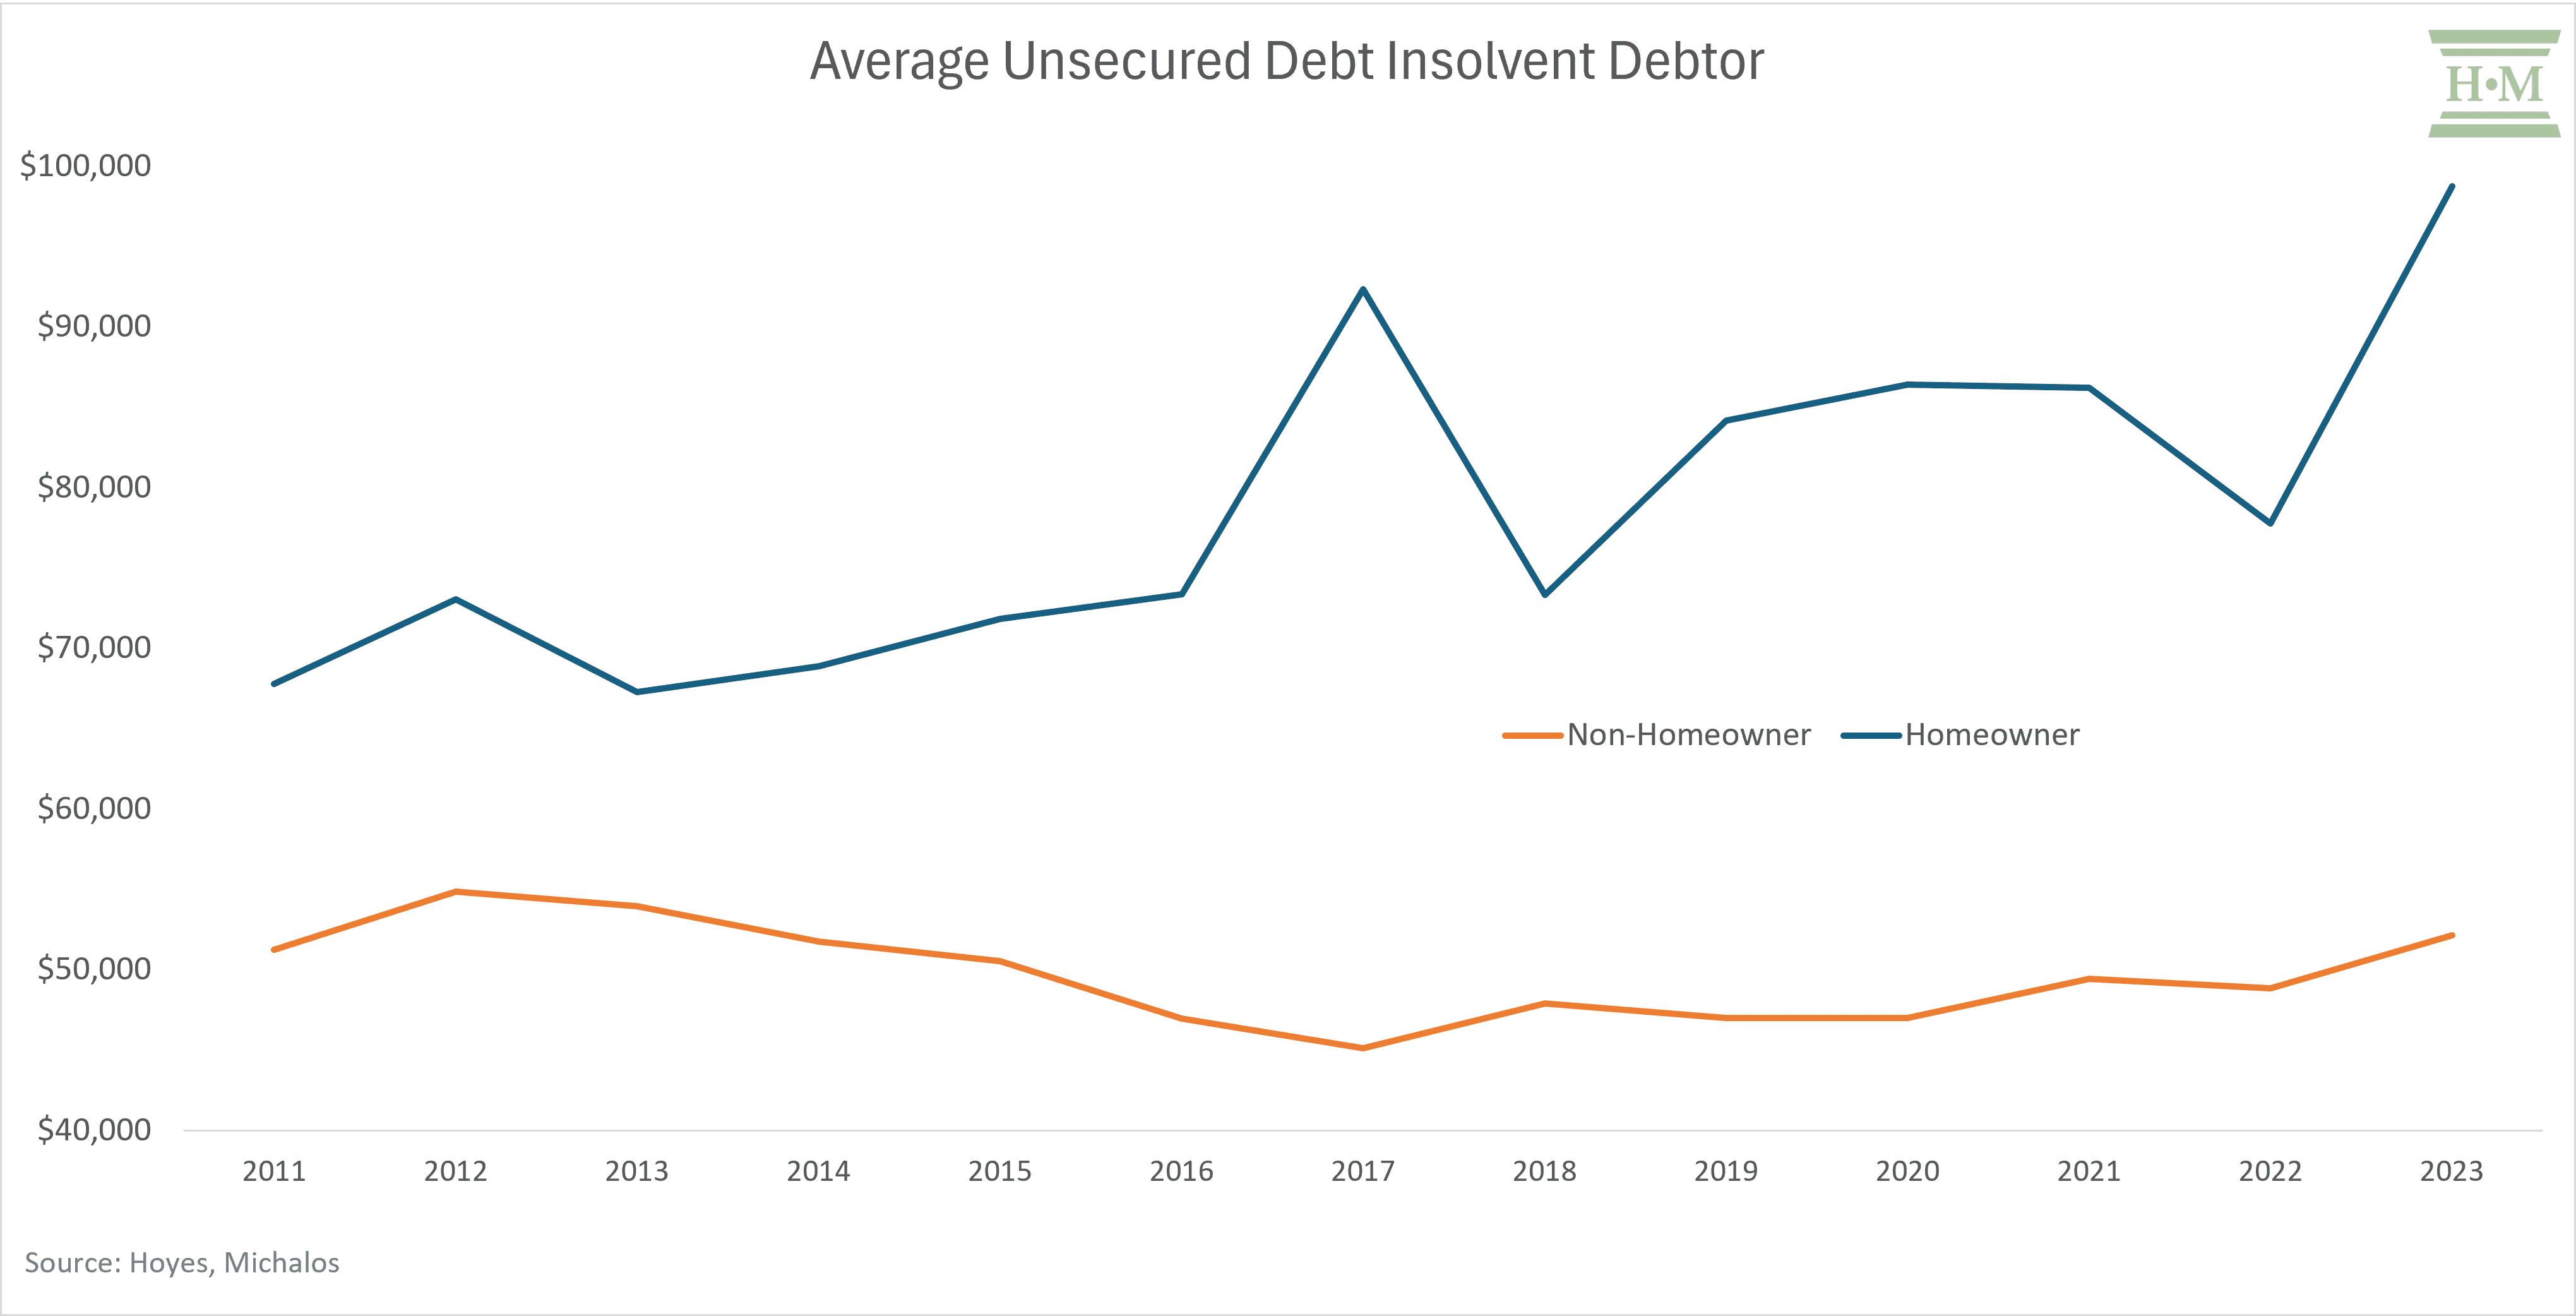 Average Unsecured Debt Insolvent Debtor